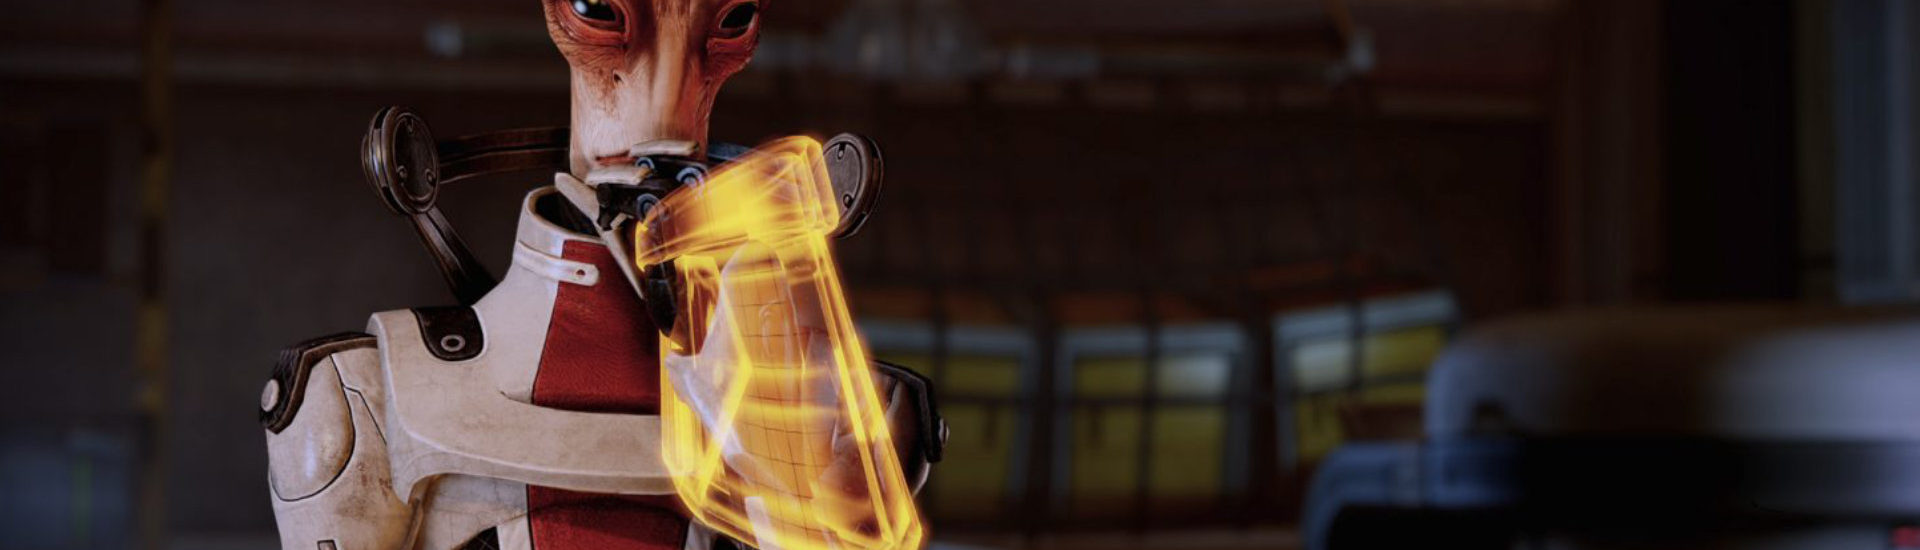 Mass Effect 5: Teaser-Trailer löst Fan-Spekulationen aus